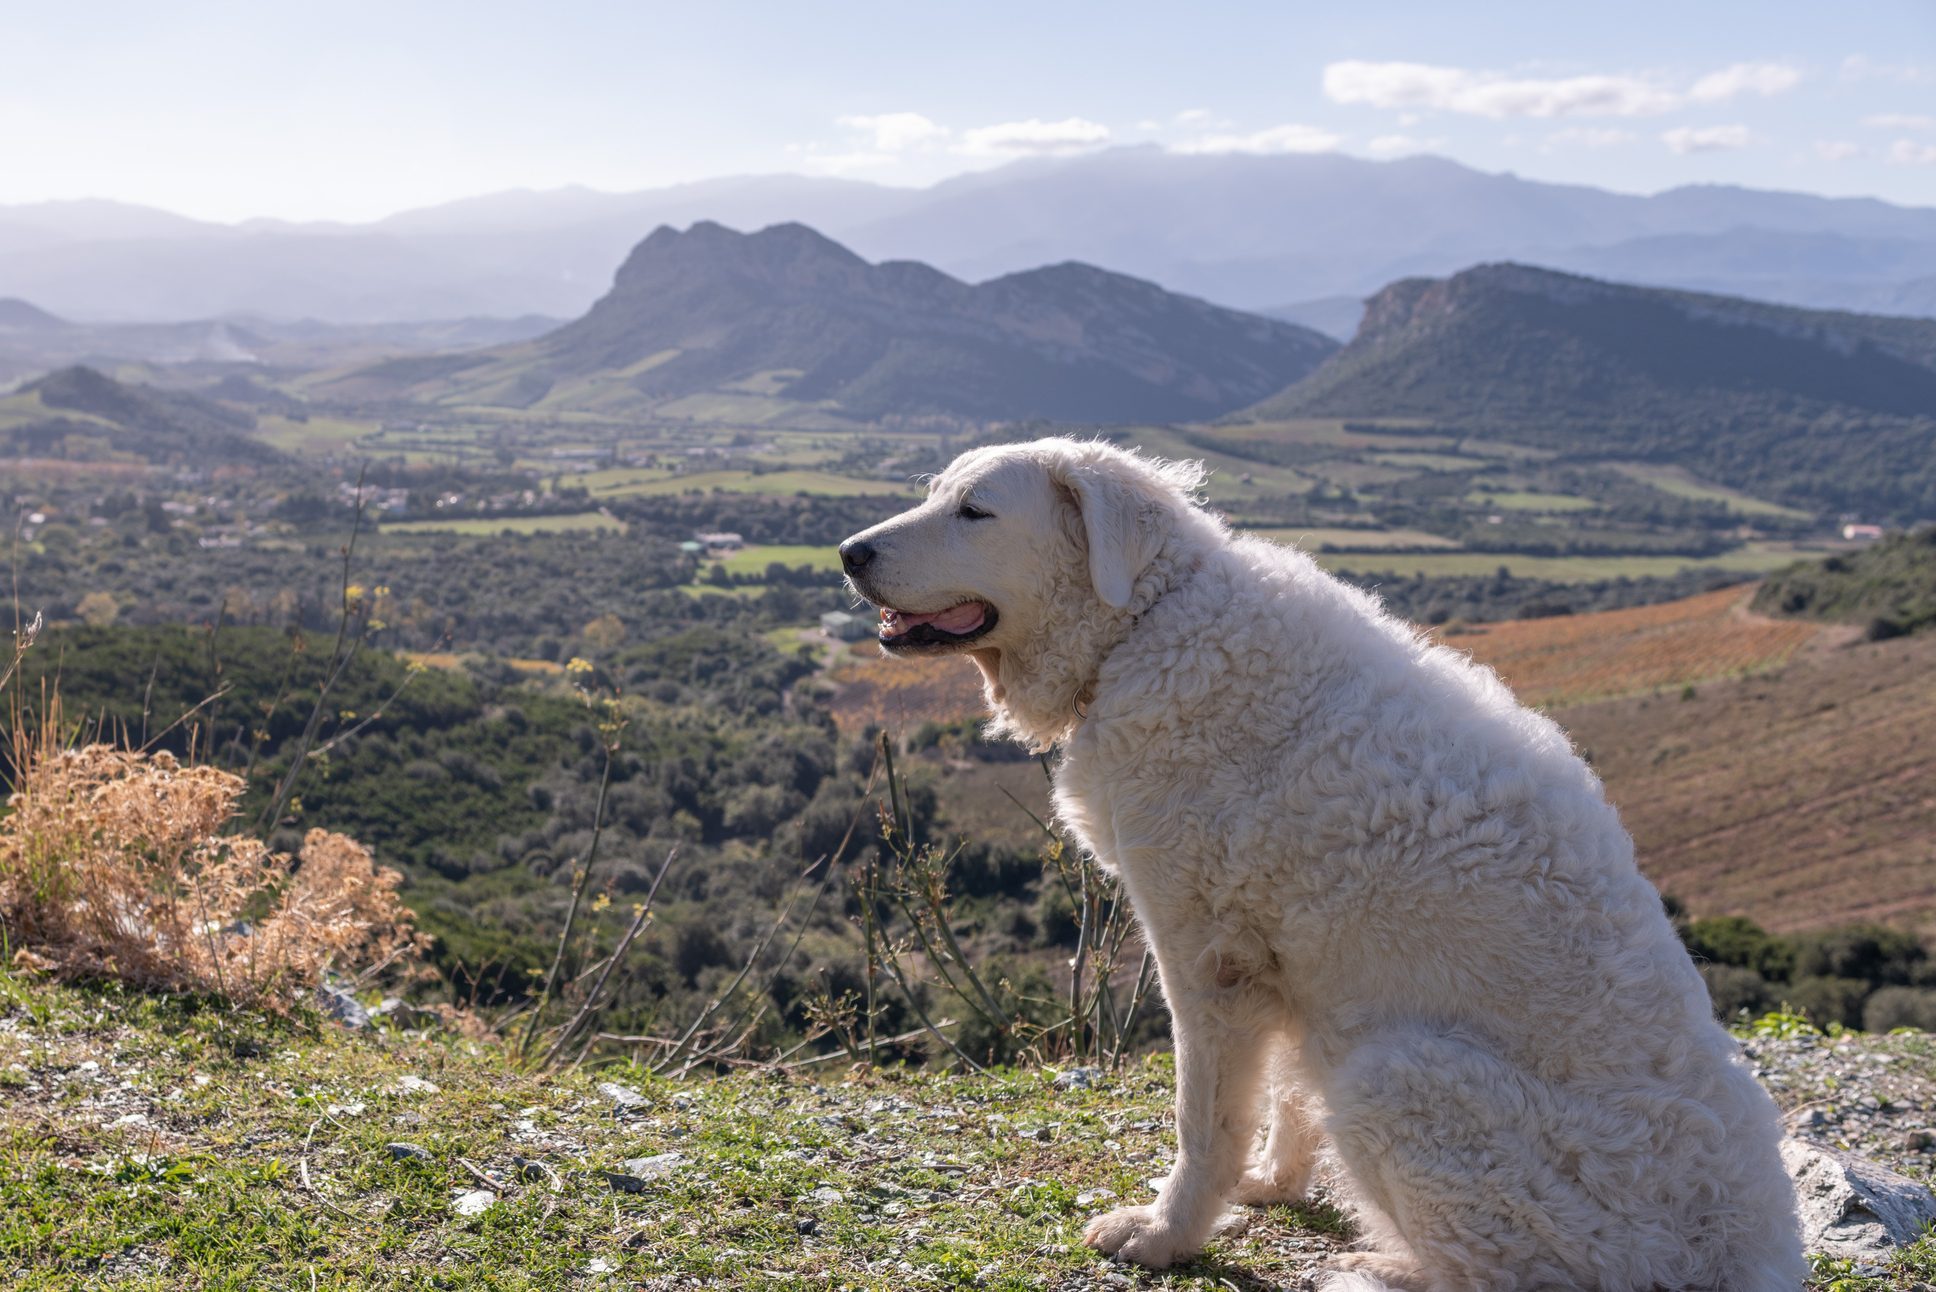 Kuvasz dog sitting in the sun overlooking the mountains